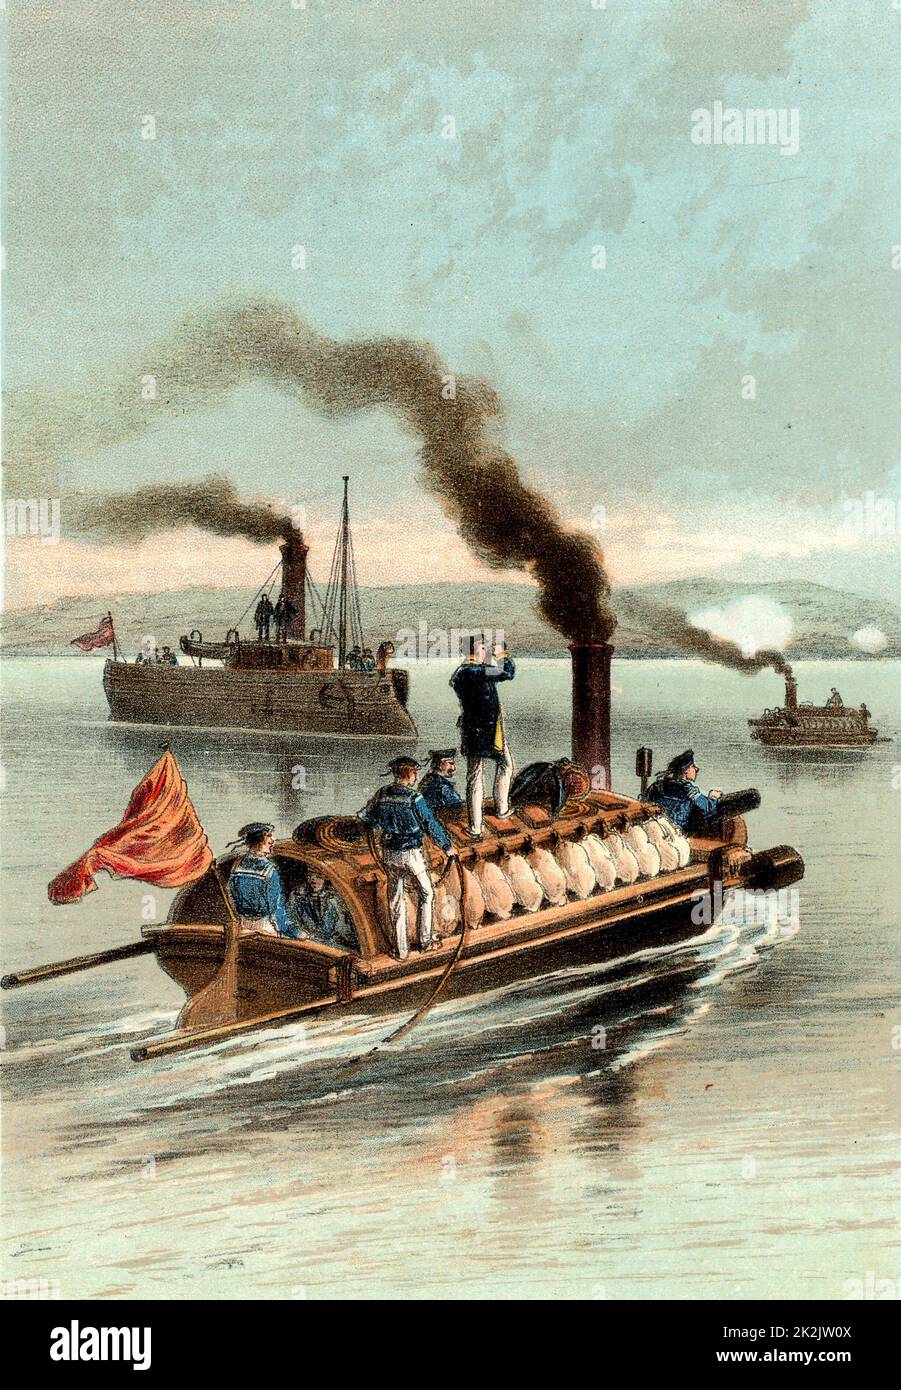 Russische Torpedoboote an der Donau. Russo-türkischer Krieg, 1877. Farblitho. Stockfoto